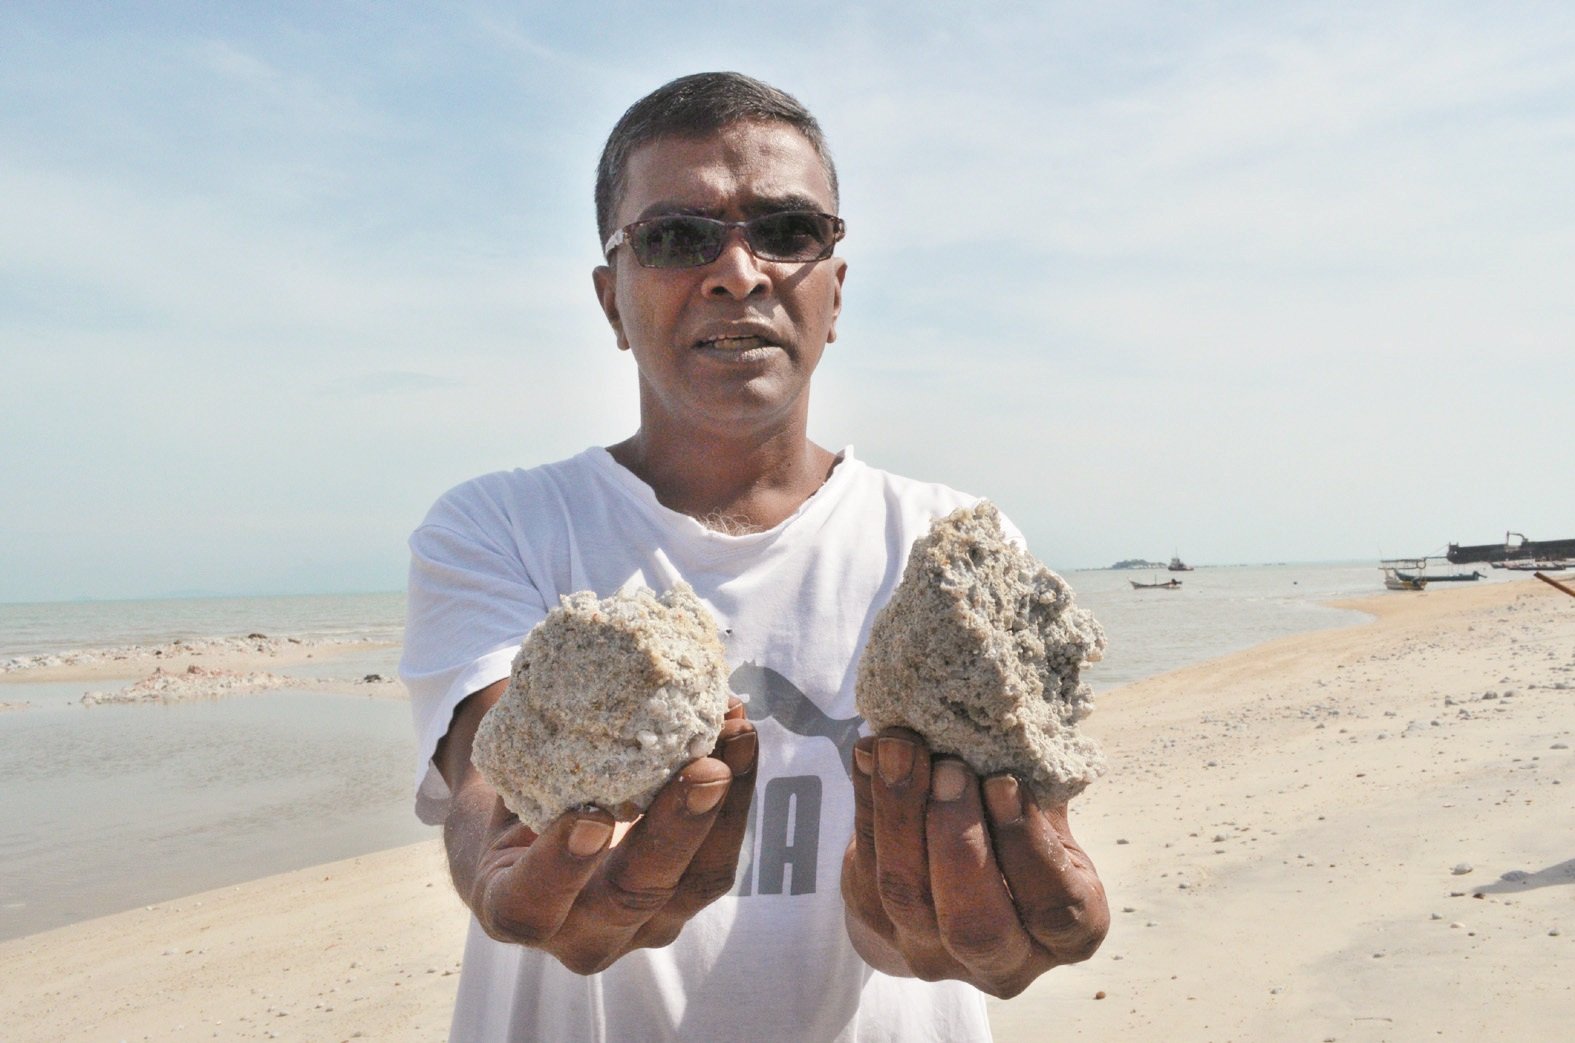 居民莫哈末丹尼尔出示结块后硬如石头的淤泥，洒落满沙滩，造成渔船危险。